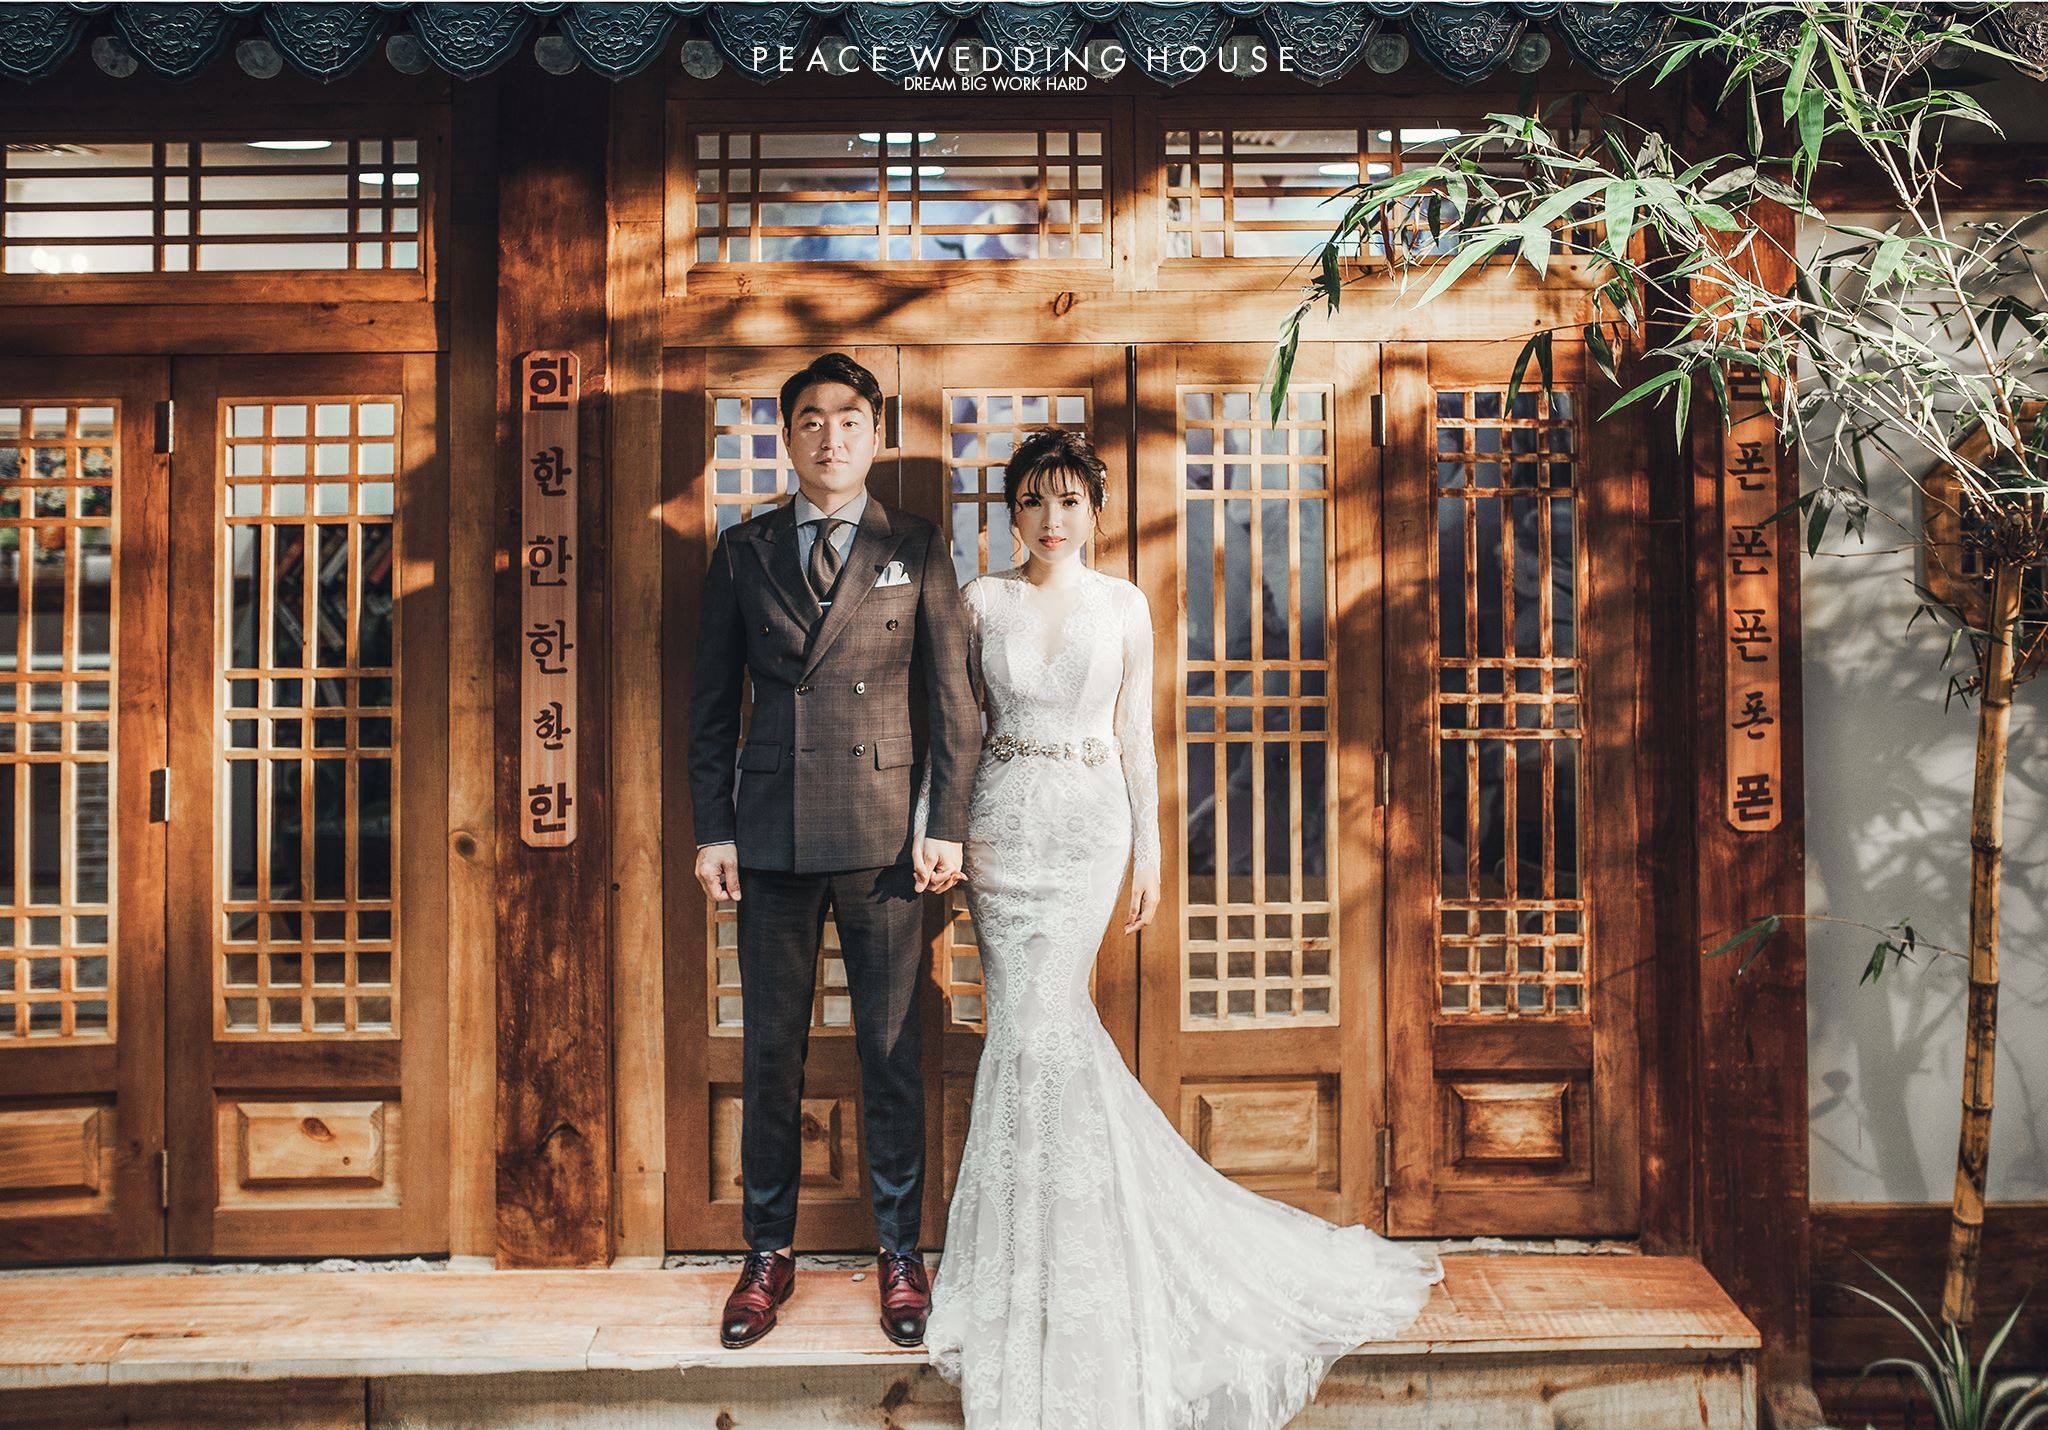 Áo dài và chụp ảnh cưới Hàn Quốc tại tphcm là sự kết hợp tuyệt vời giữa trang phục truyền thống của Việt Nam và gu thẩm mỹ hiện đại của Hàn Quốc. Bạn sẽ được tận hưởng sự thanh lịch, sang trọng mà vẫn giữ được phần độc đáo của bộ trang phục này. Nhấp chuột vào ảnh để xem thêm chi tiết!